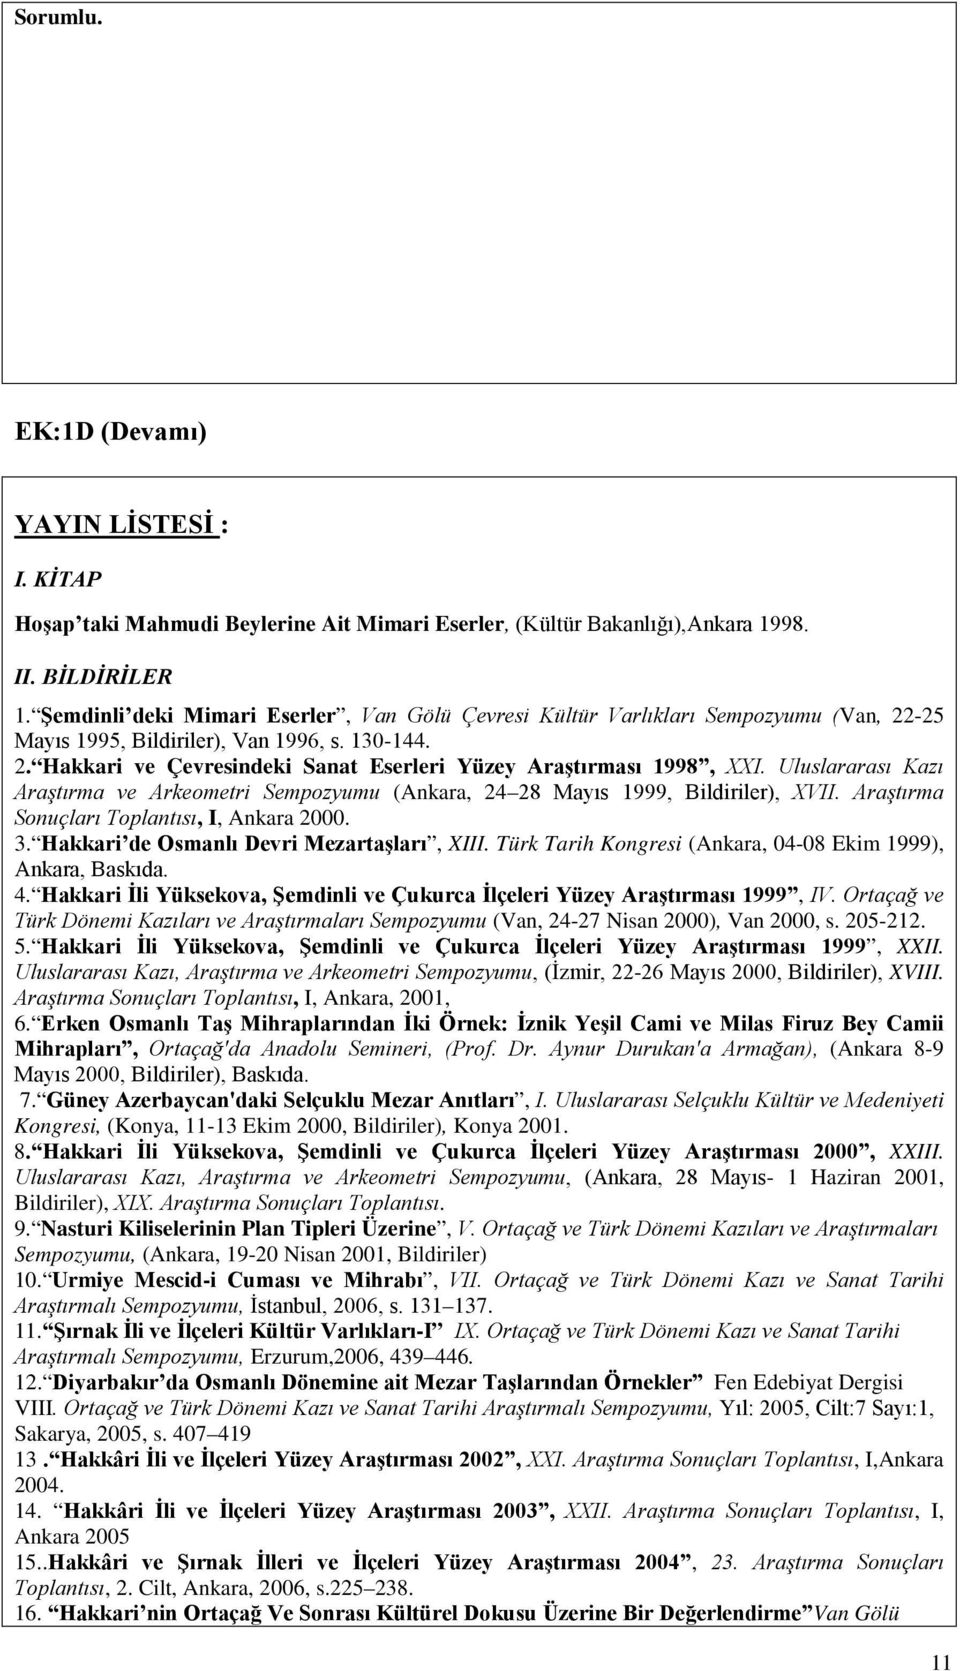 Uluslararası Kazı Araştırma ve Arkeometri Sempozyumu (Ankara, 24 28 Mayıs 1999, Bildiriler), XVII. Araştırma Sonuçları Toplantısı, I, Ankara 2000. 3. Hakkari de Osmanlı Devri Mezartaşları, XIII.